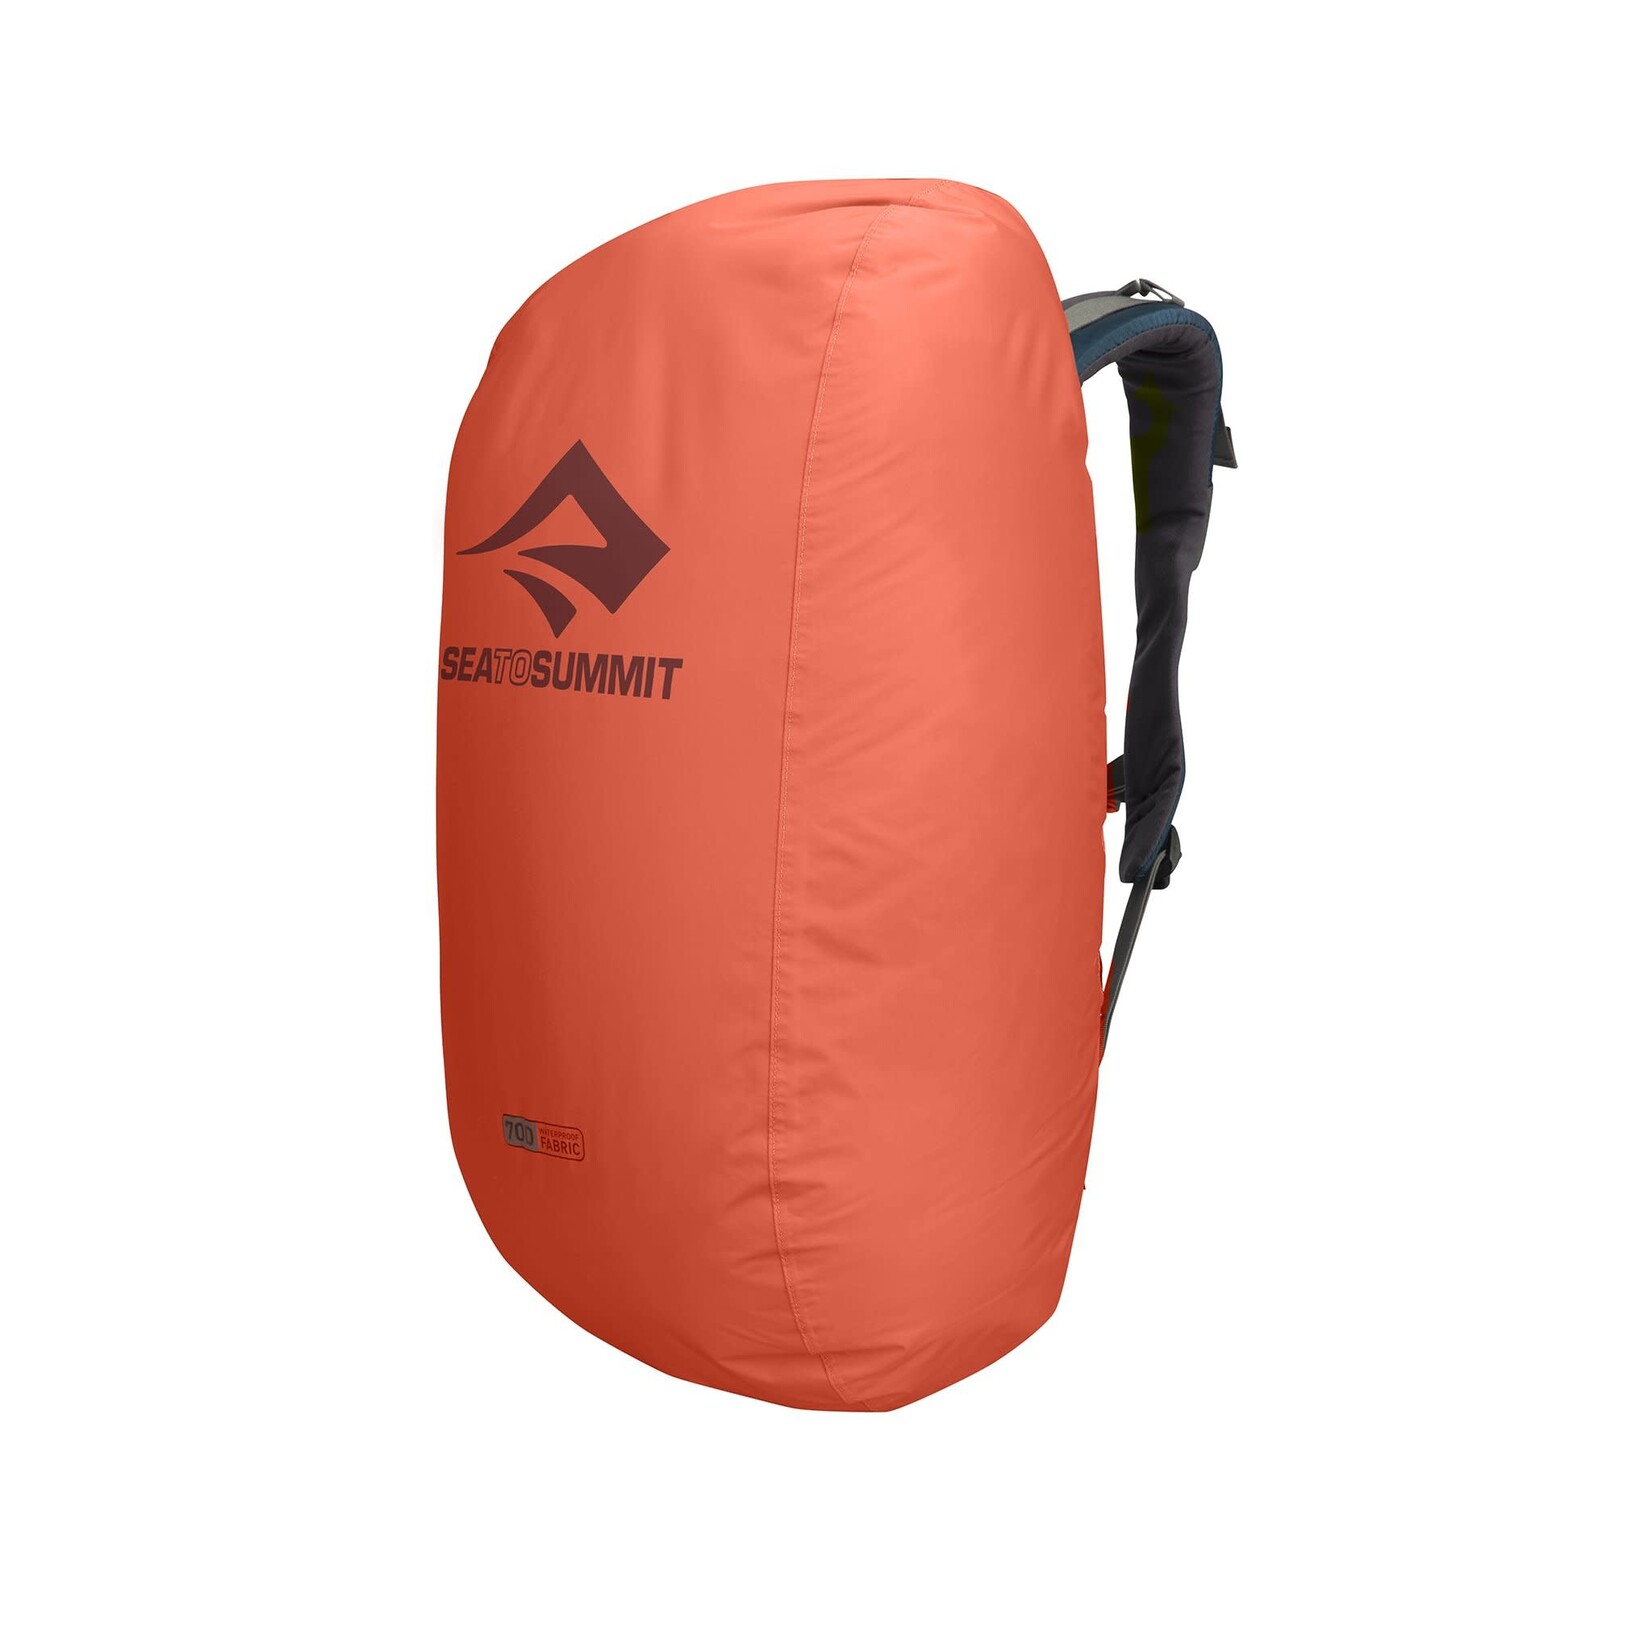 Sea To Summit Protège-sac Nylon Backpack Rain Cover